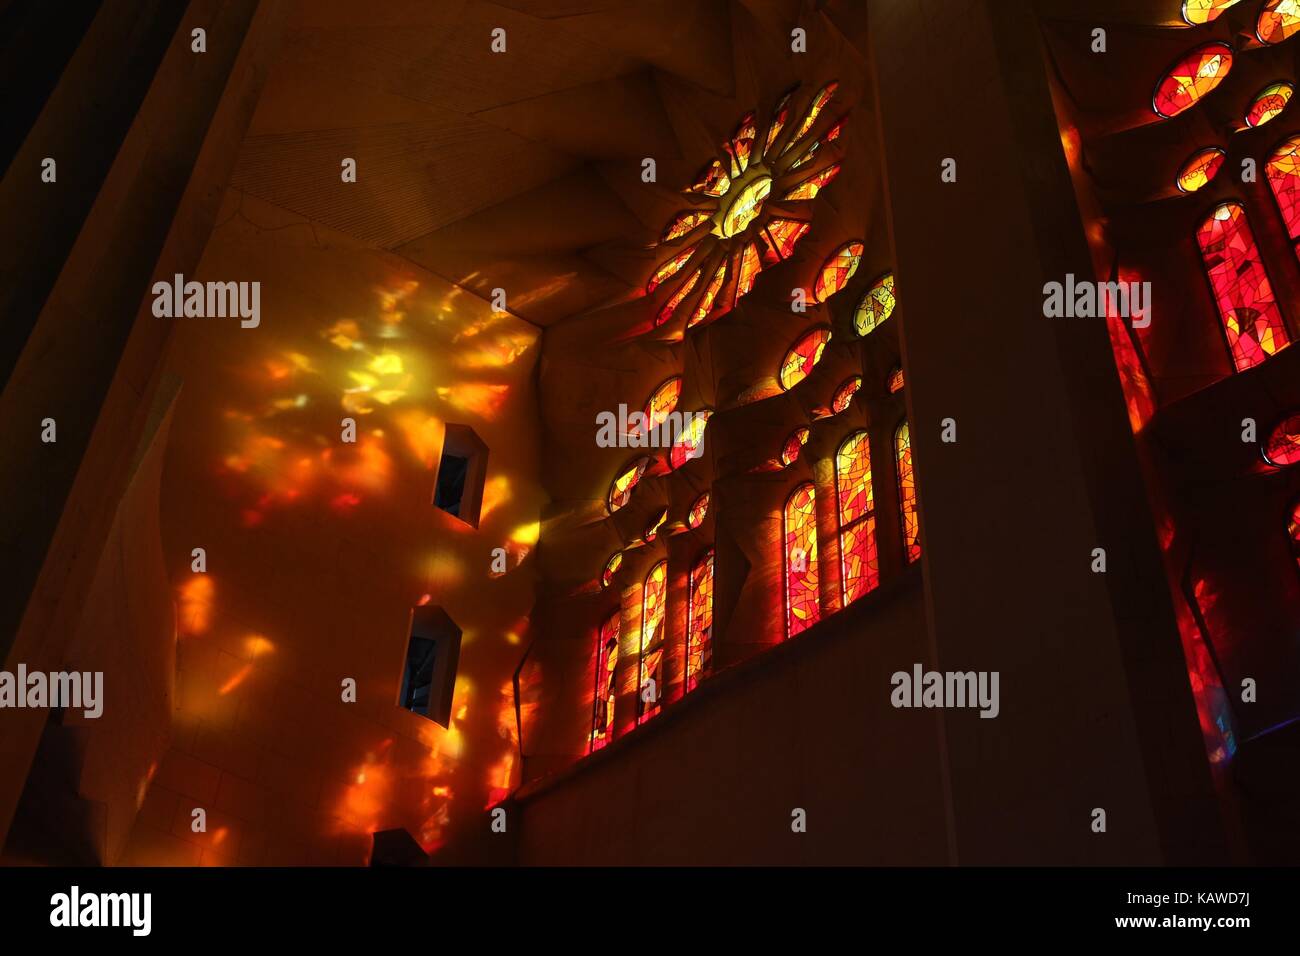 La Sagrada famillia Innenraum Barcelona Spanien Stockfoto